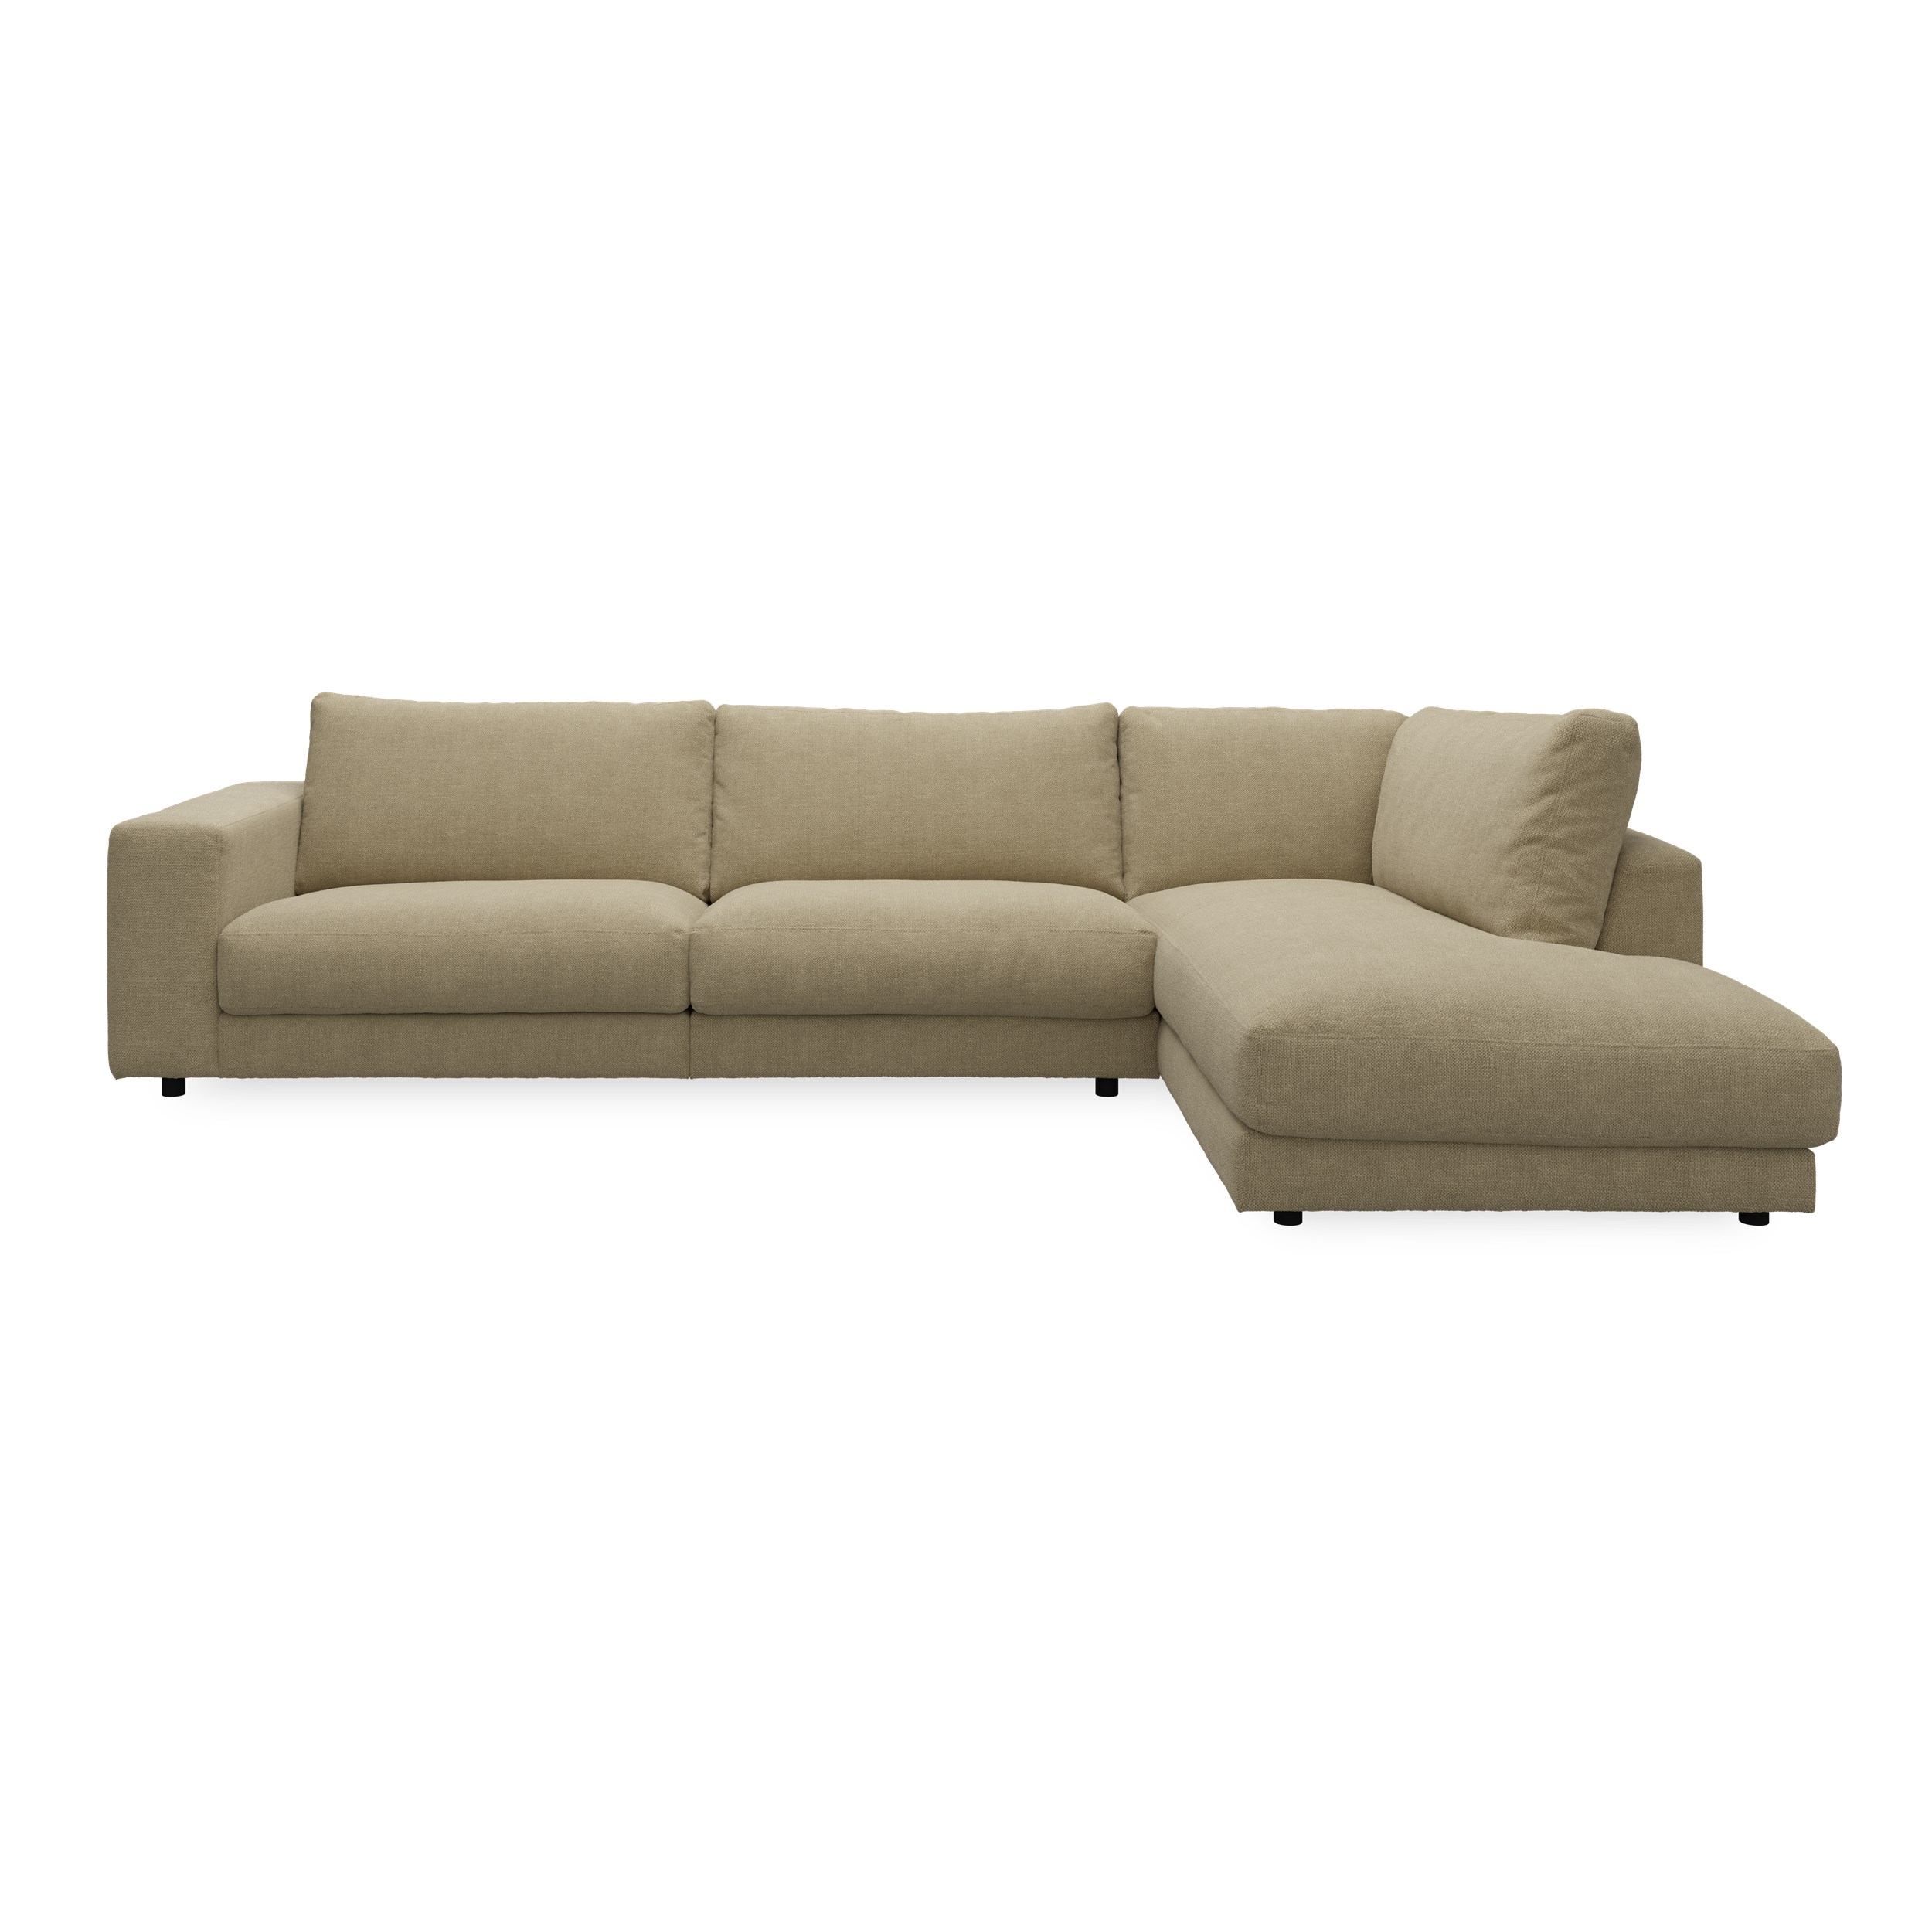 Bennent högervänd soffa med divan - Picasso Sand klädsel, ben i svart plast och S:skum/fib/din/sili R:Dun/skum